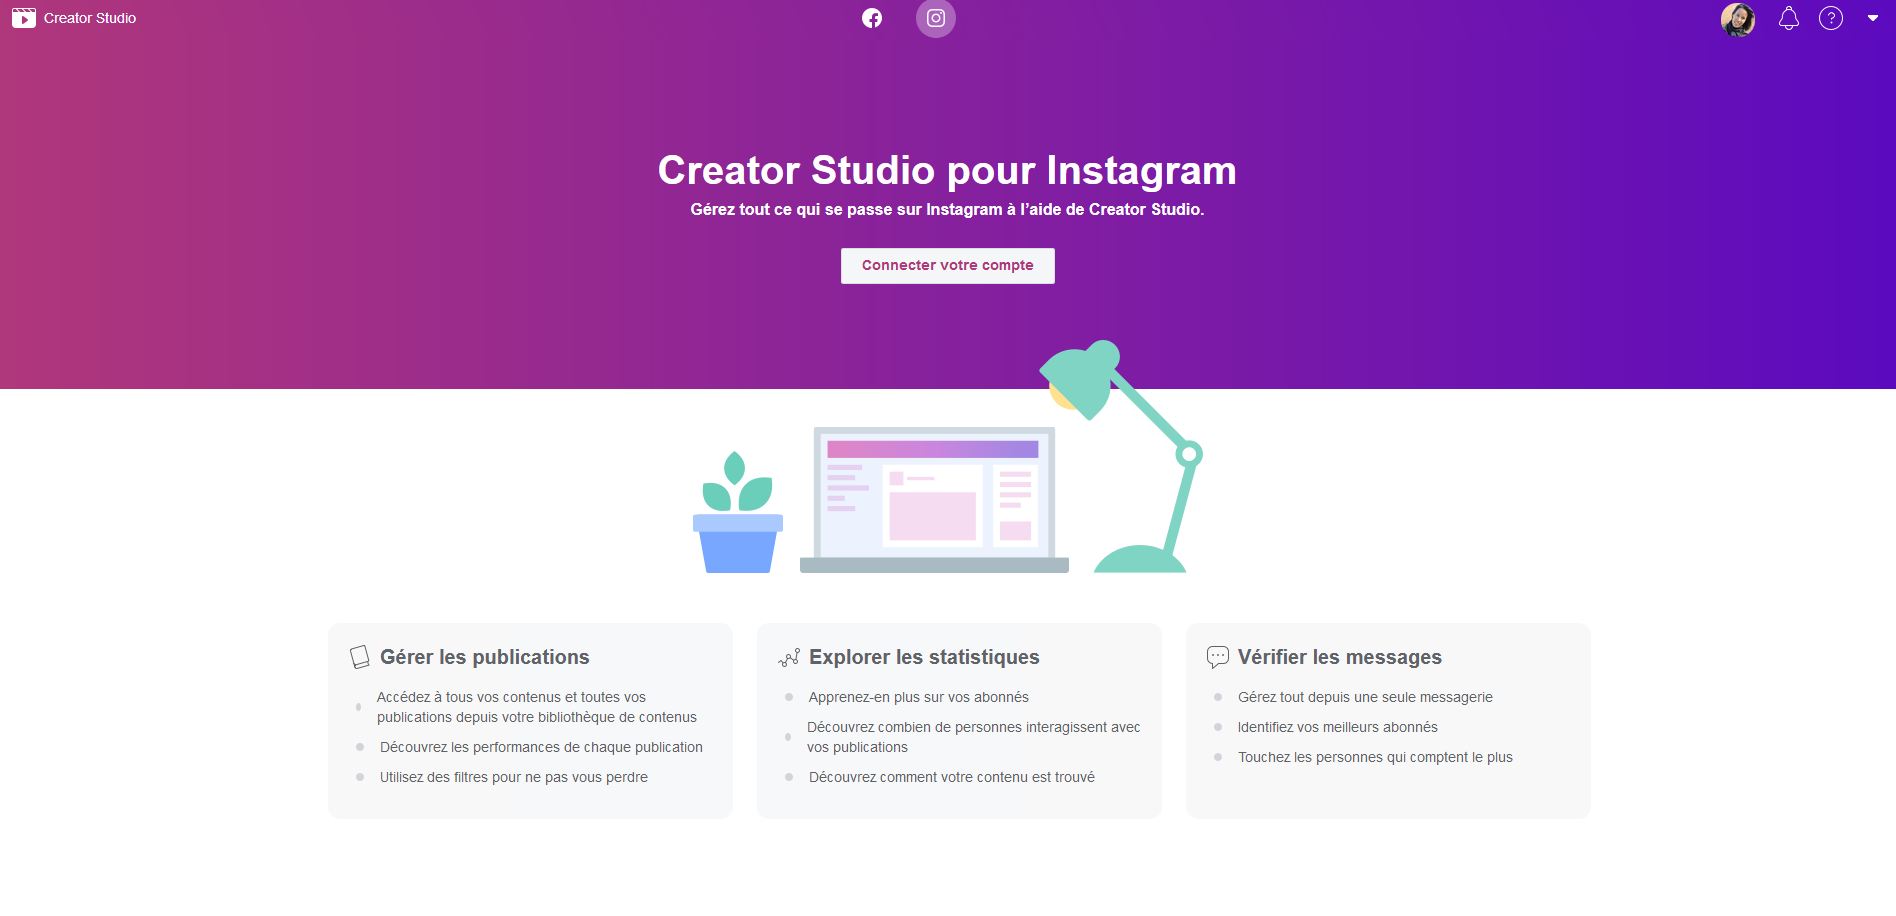 Creator Studio pour Instagram